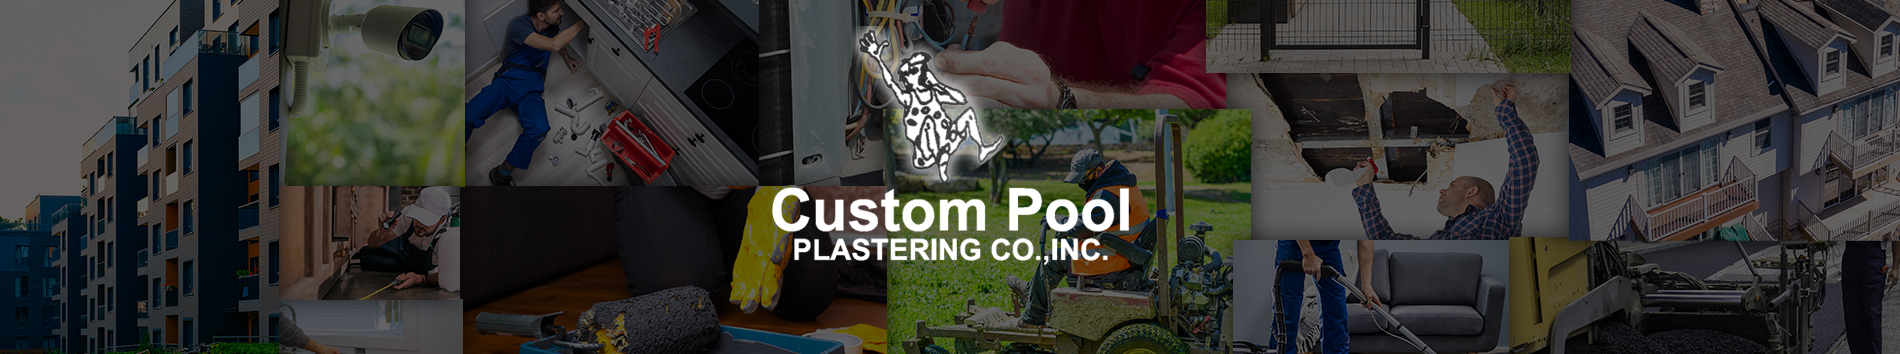 Custom Pool Plastering Co., Inc.